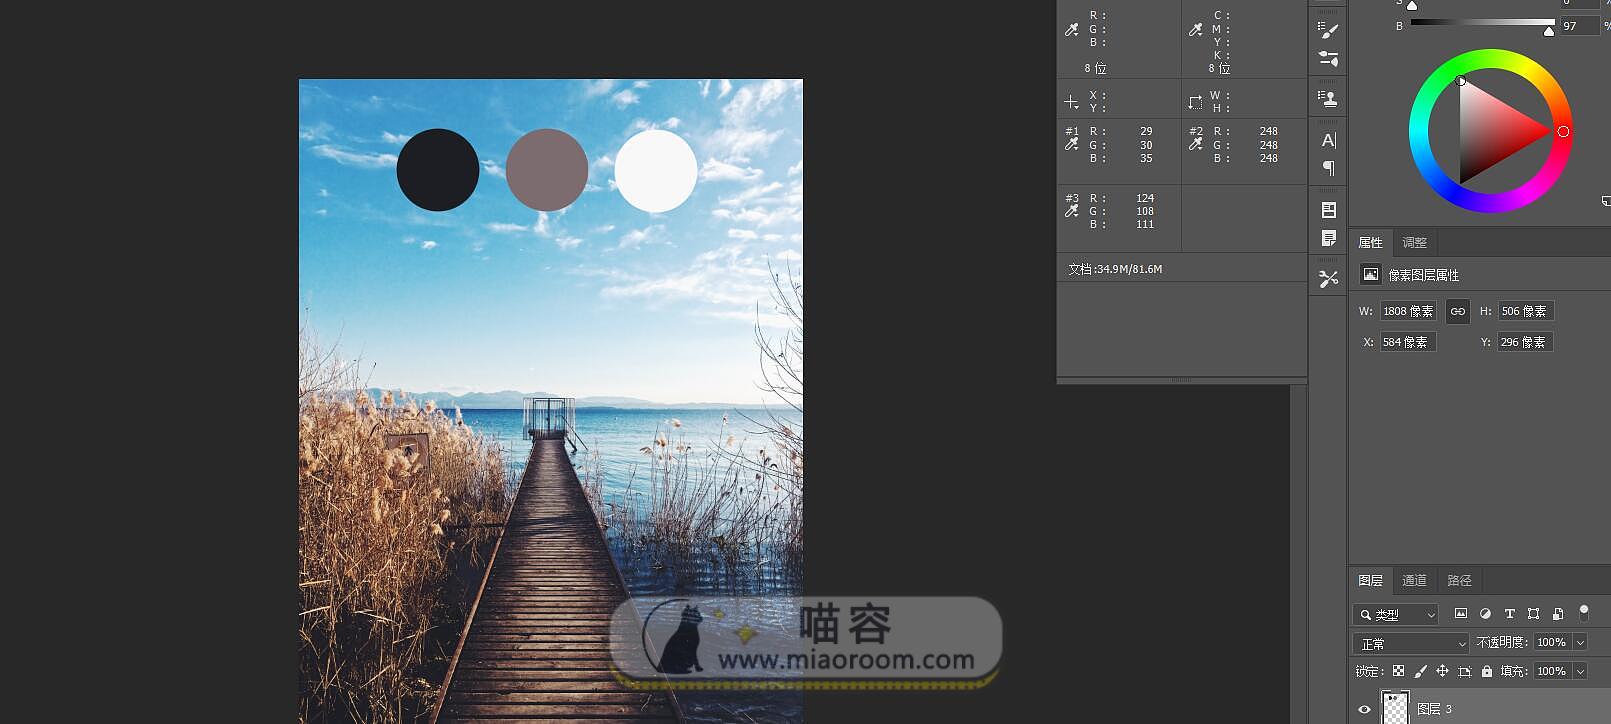 「攝影后期」 PhotoShop 利用閾值快速完成色系統一